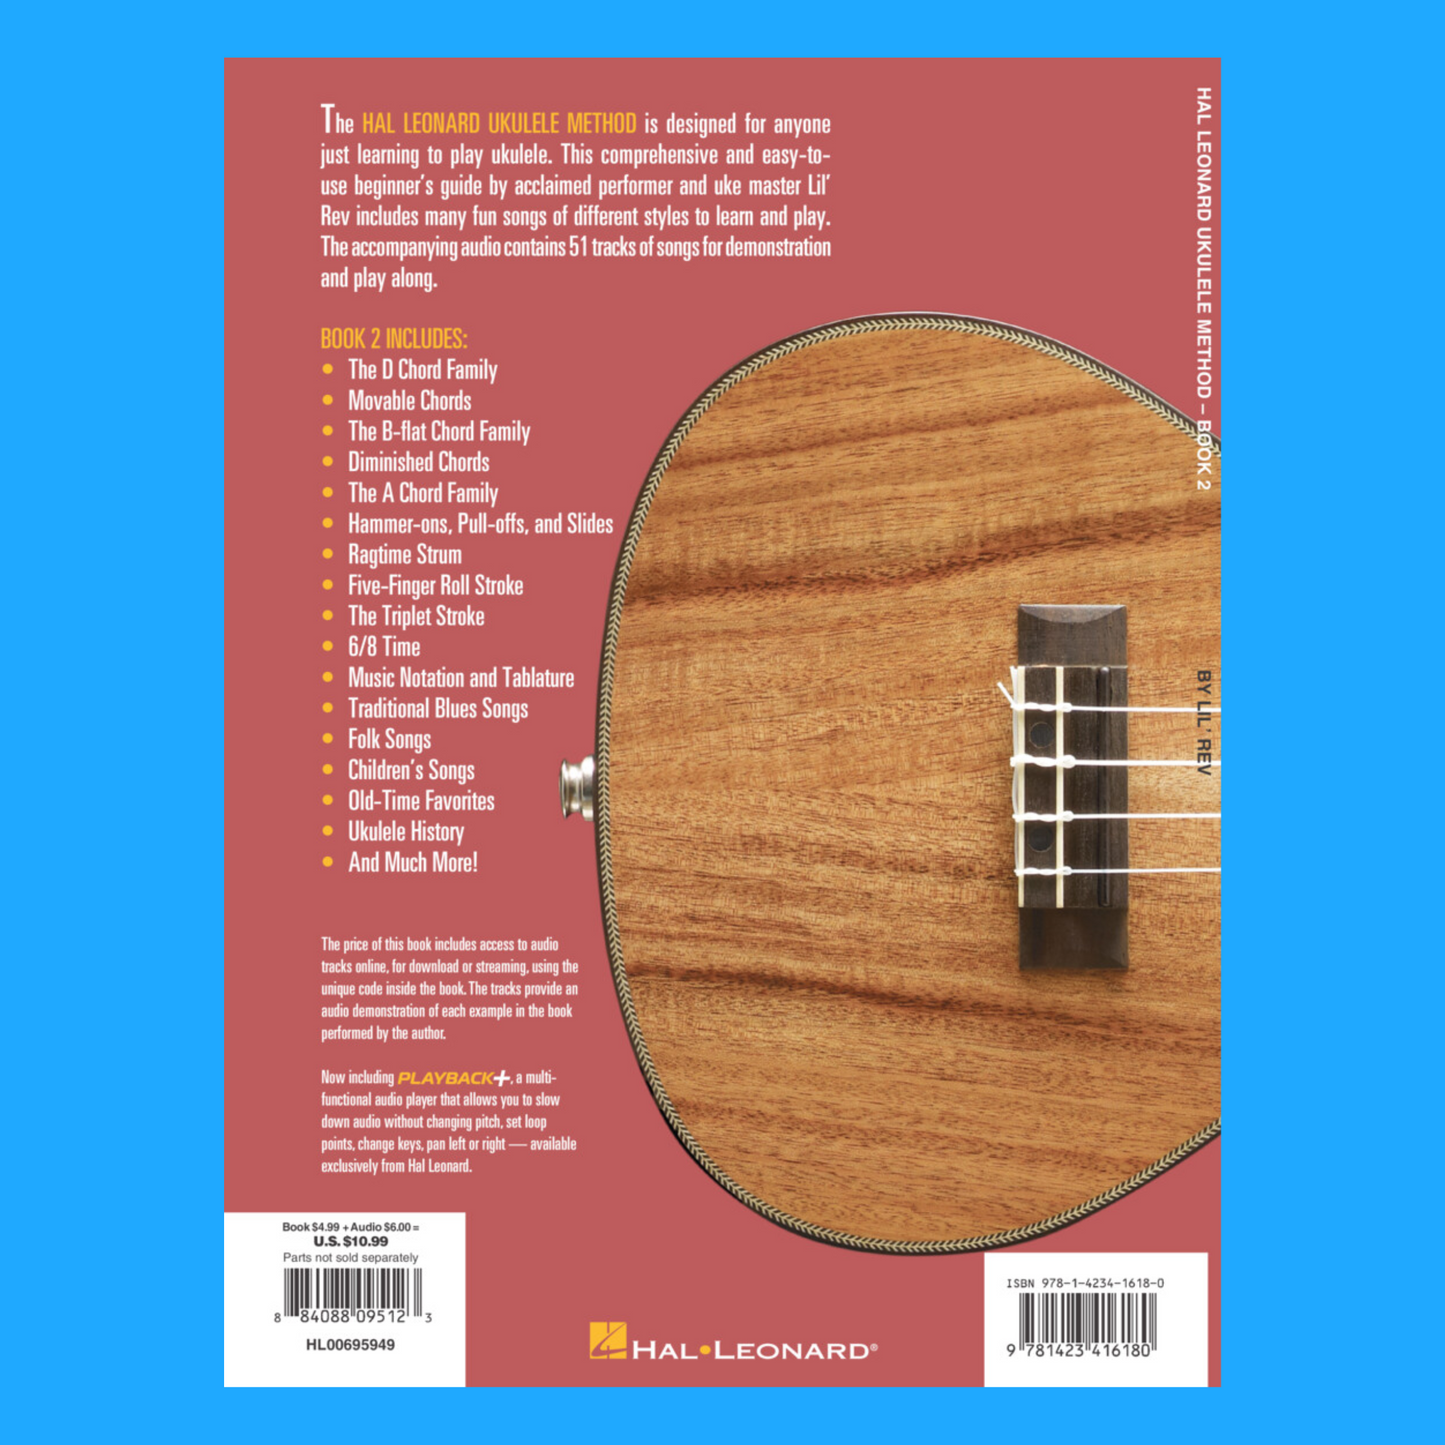 Hal Leonard Ukulele Method Book 2 (Book/Ola)